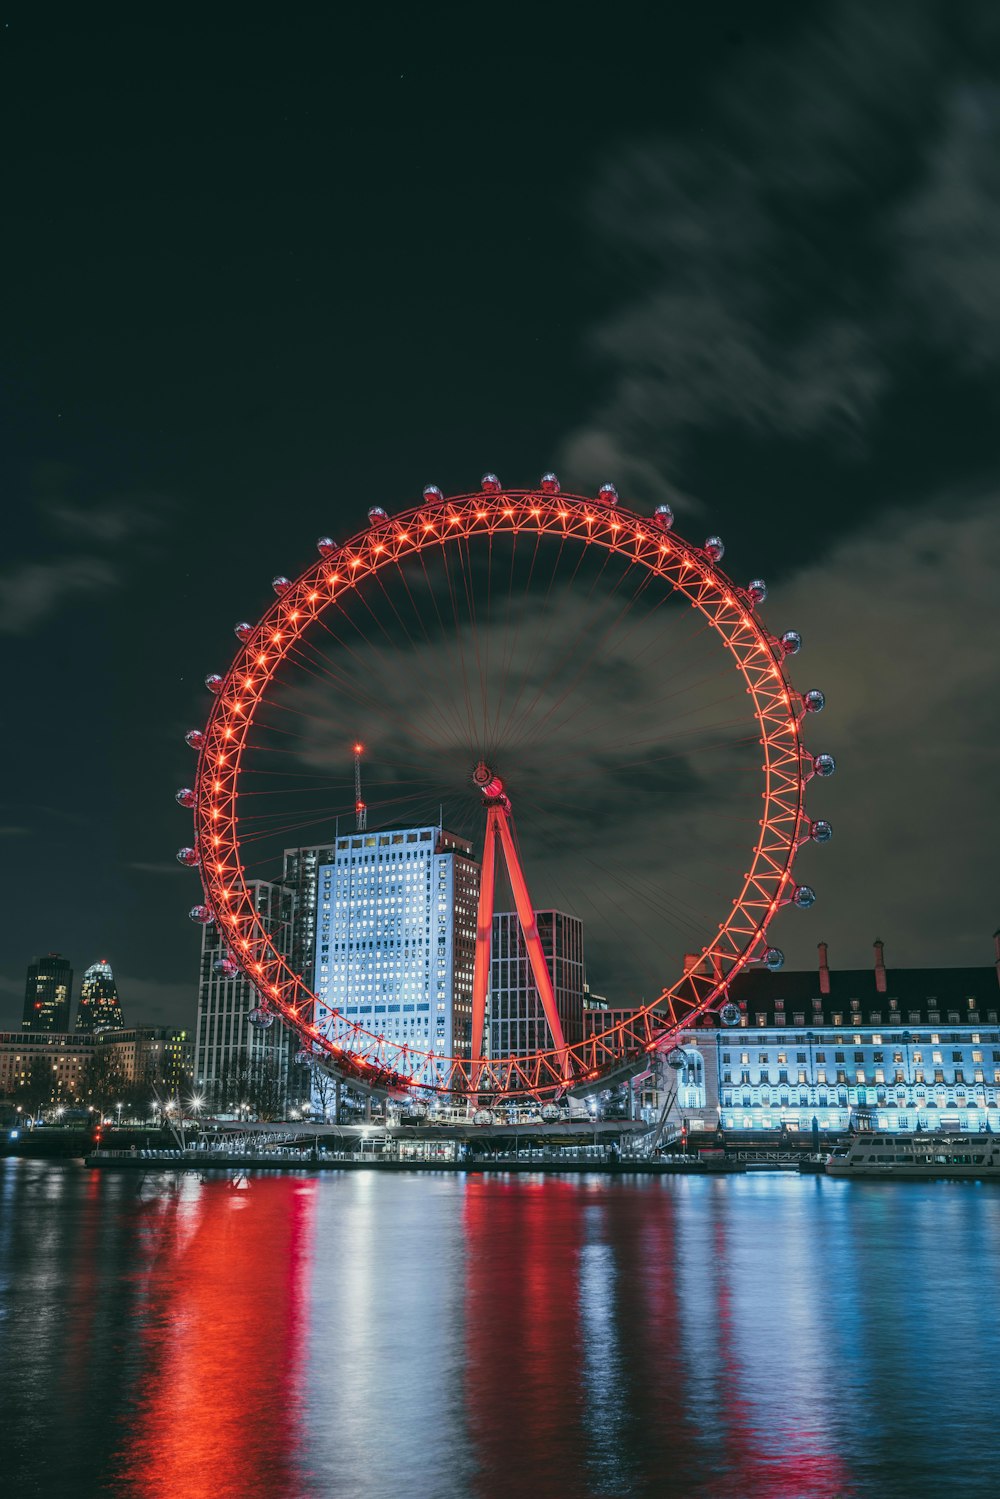 London Eye during night time